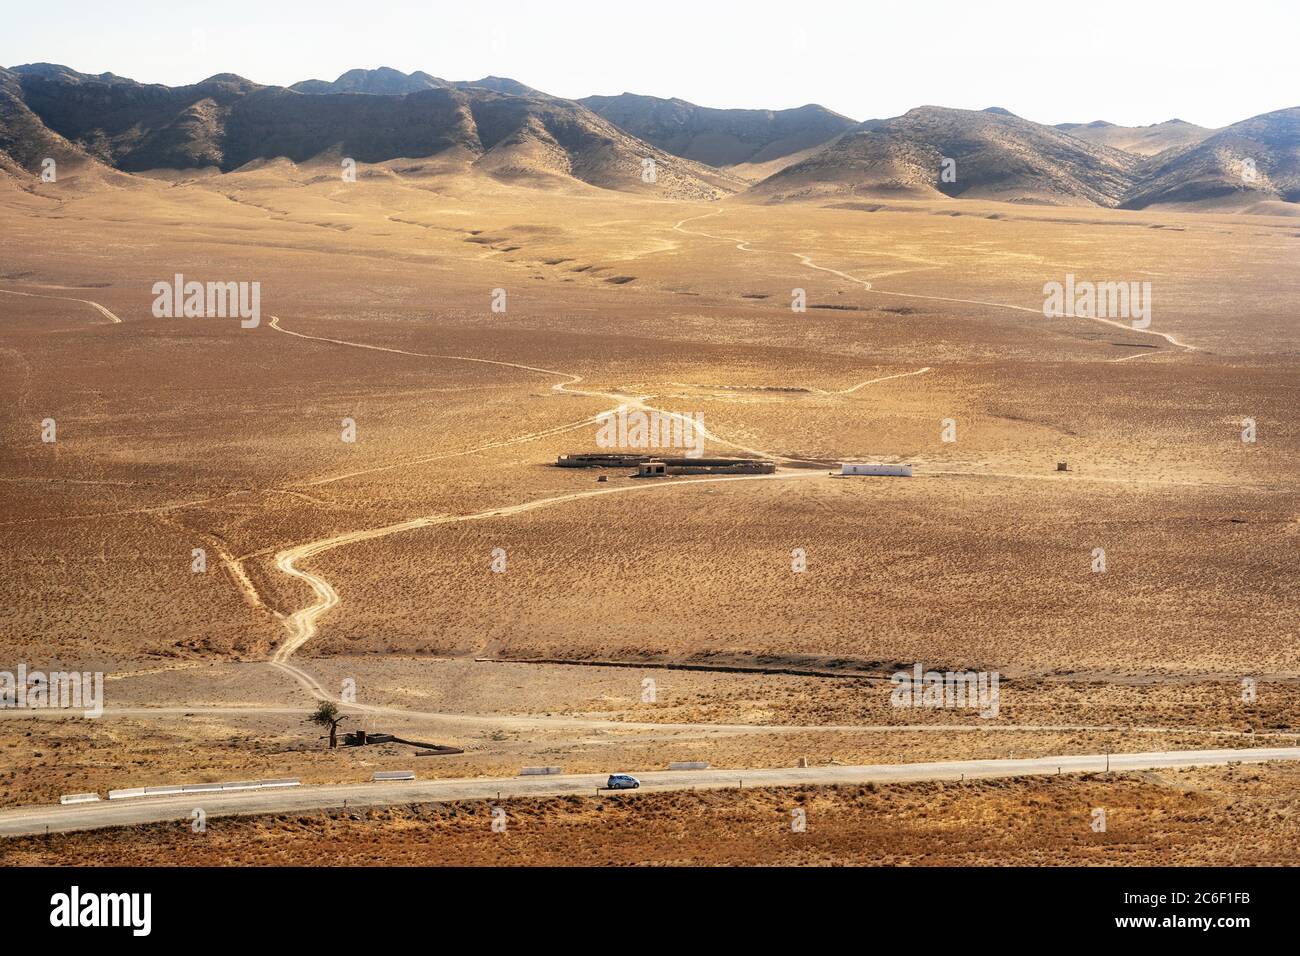 Granja de piedra con casas en medio de la arena. Viaje en coche por el desierto. Uzbekistán Foto de stock